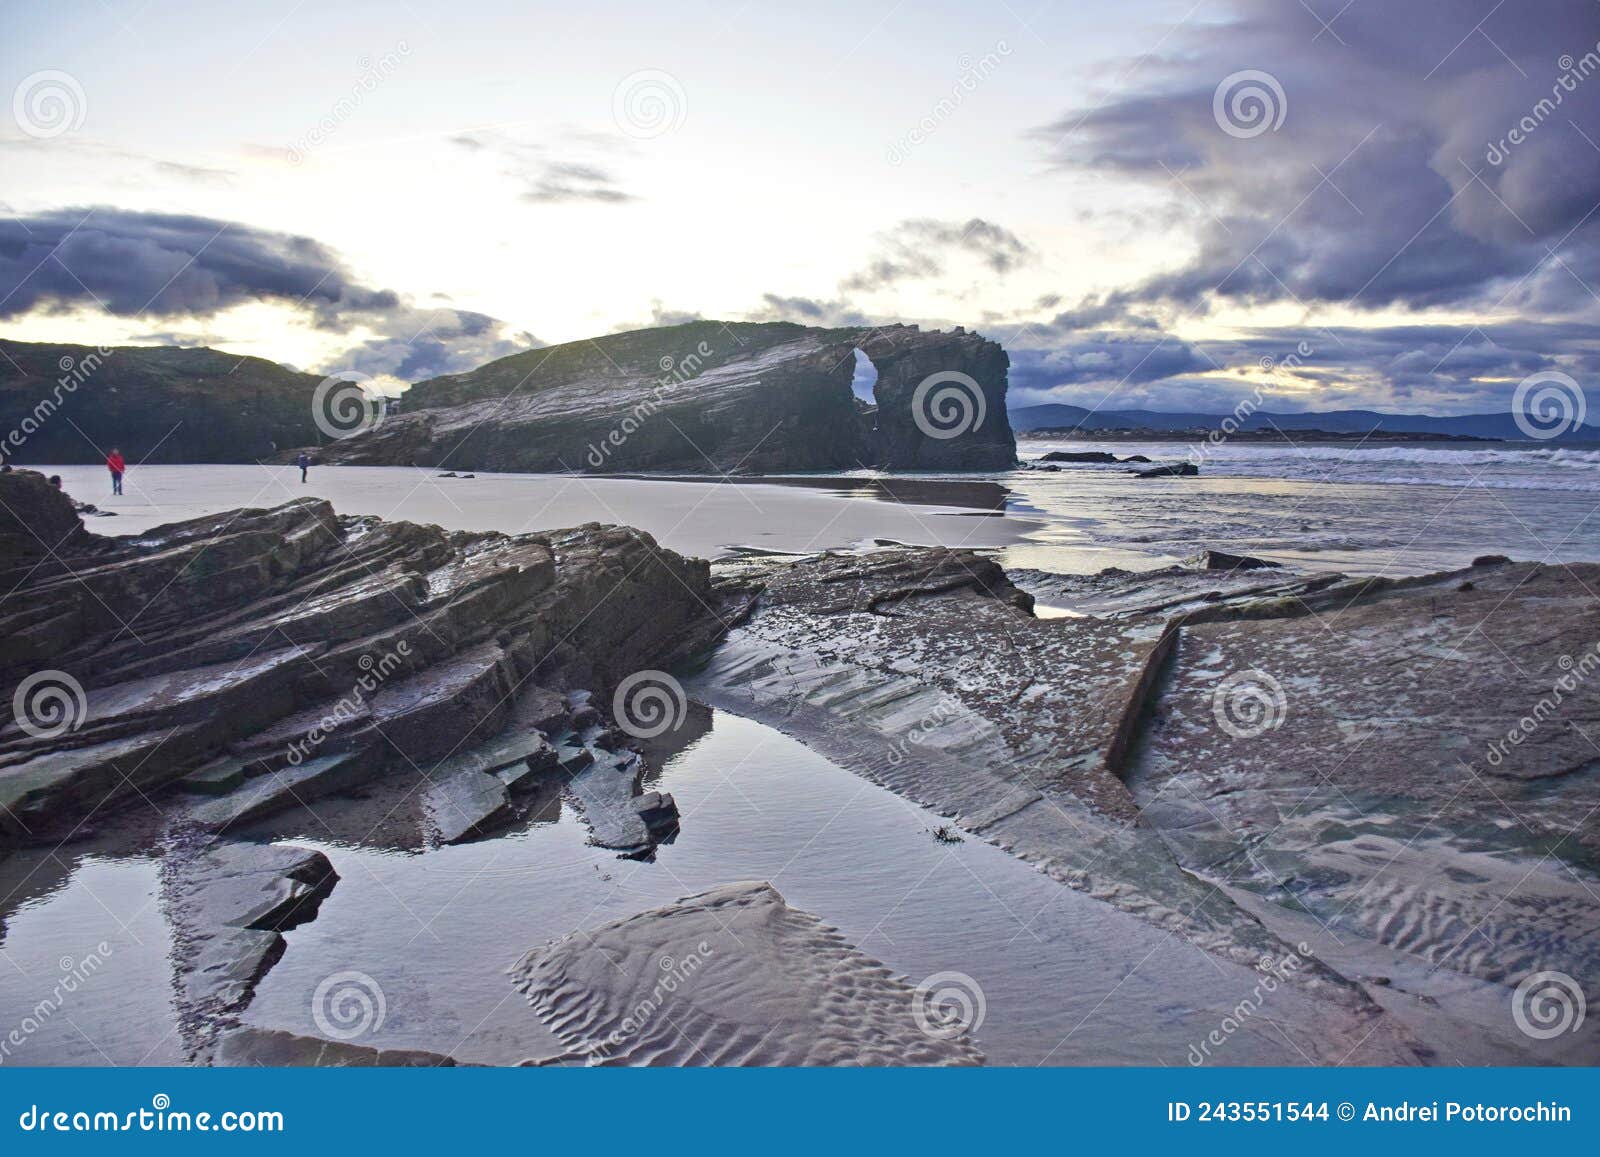 sandy beach with large rocks . praia de augas santas